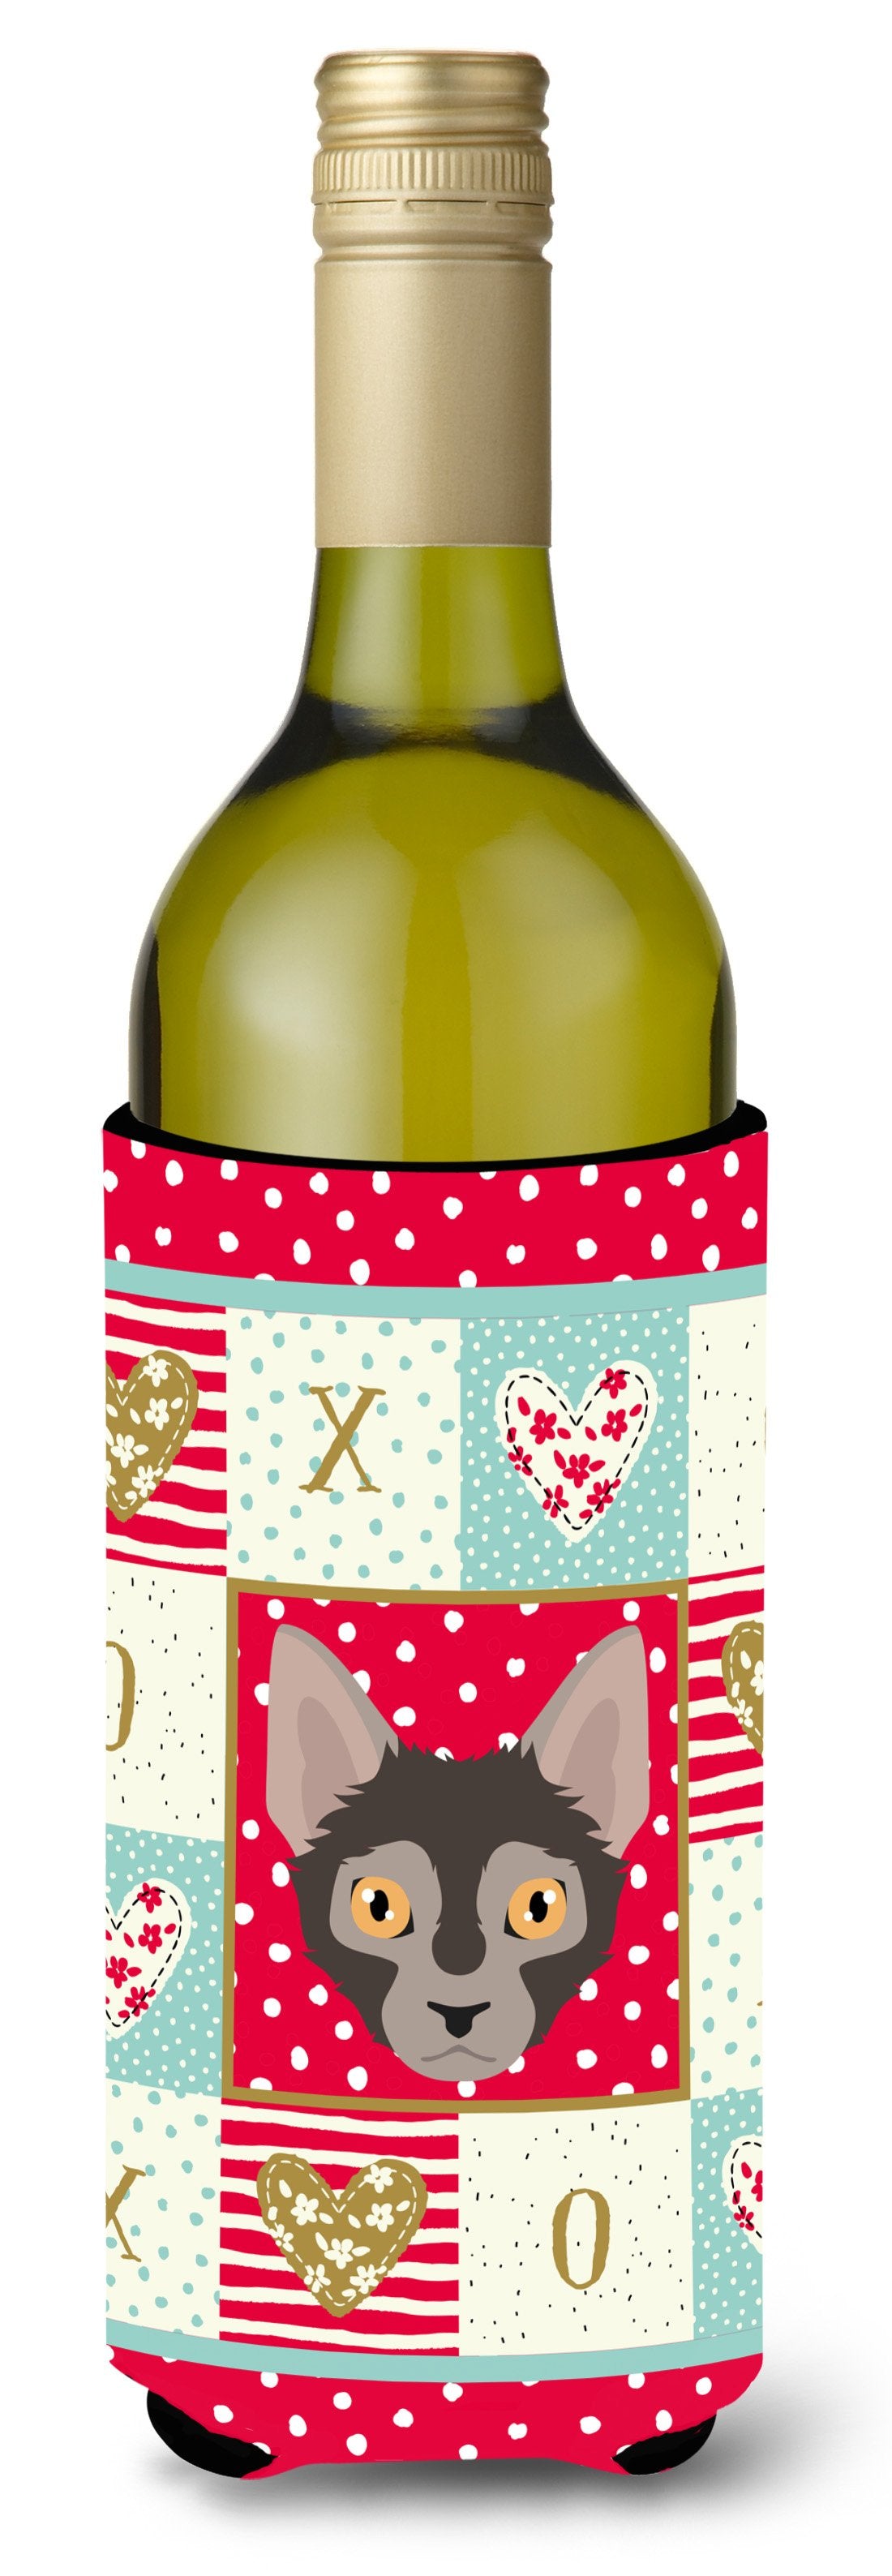 Lykoi Cat Wine Bottle Beverage Insulator Hugger CK5128LITERK by Caroline's Treasures